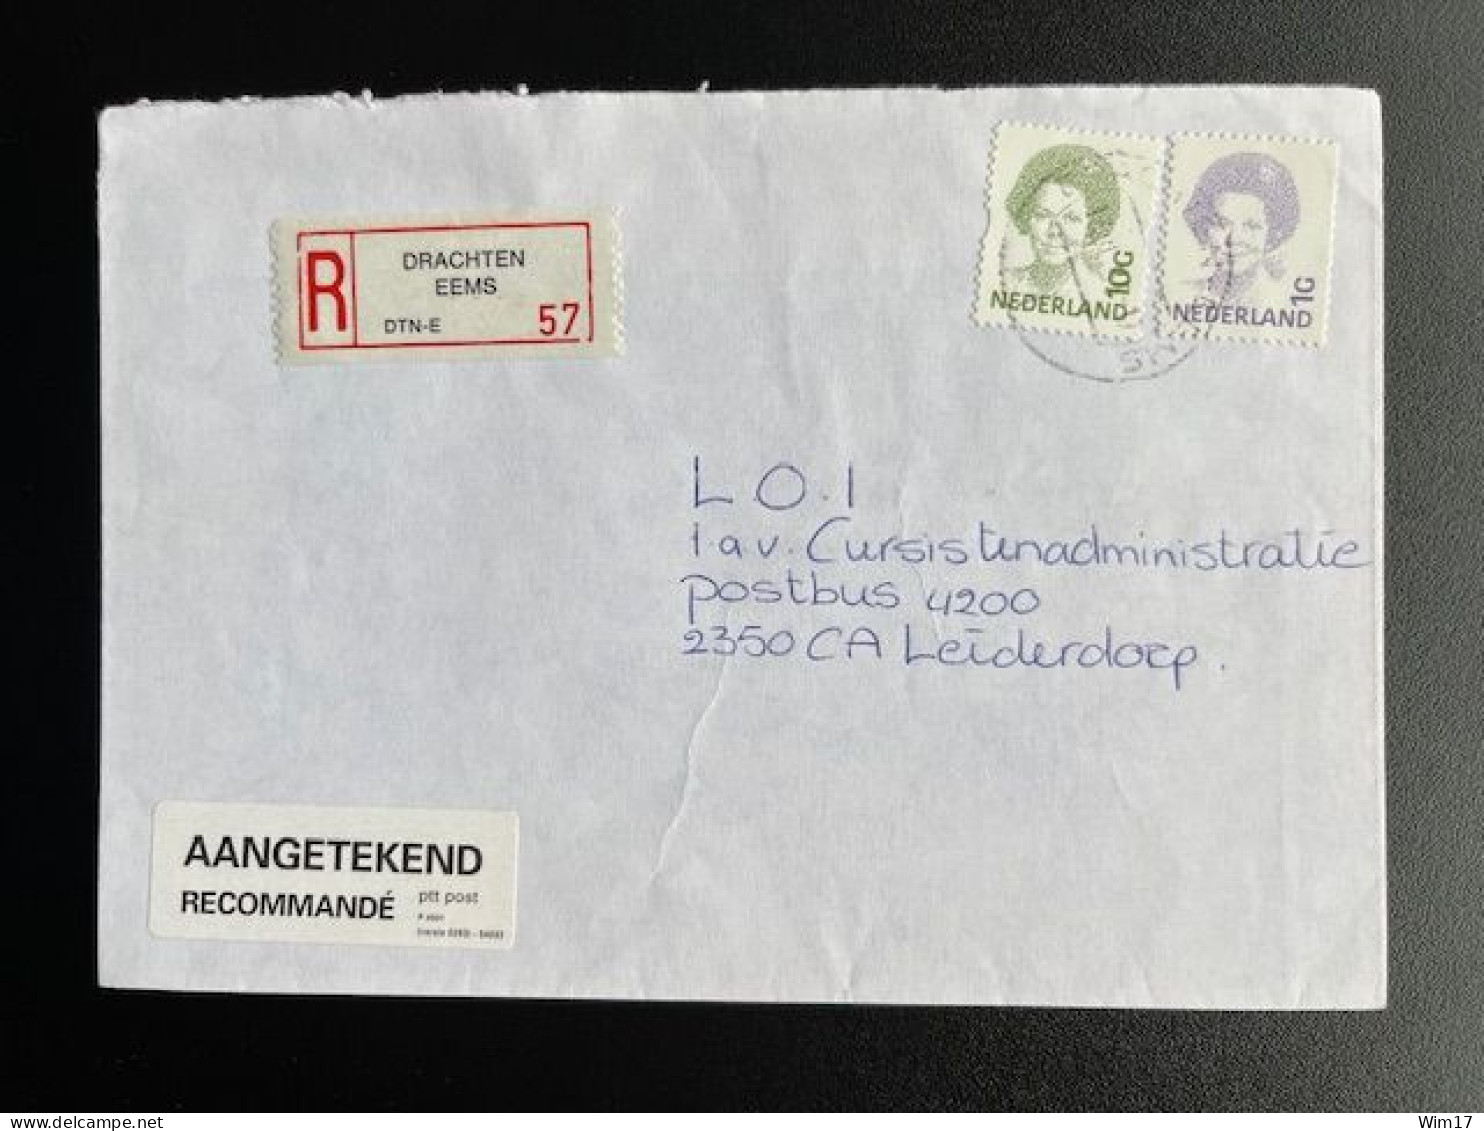 NETHERLANDS 1995 REGISTERED LETTER DRACHTEN EEMS TO LEIDERDORP 13-06-1995 NEDERLAND AANGETEKEND - Briefe U. Dokumente